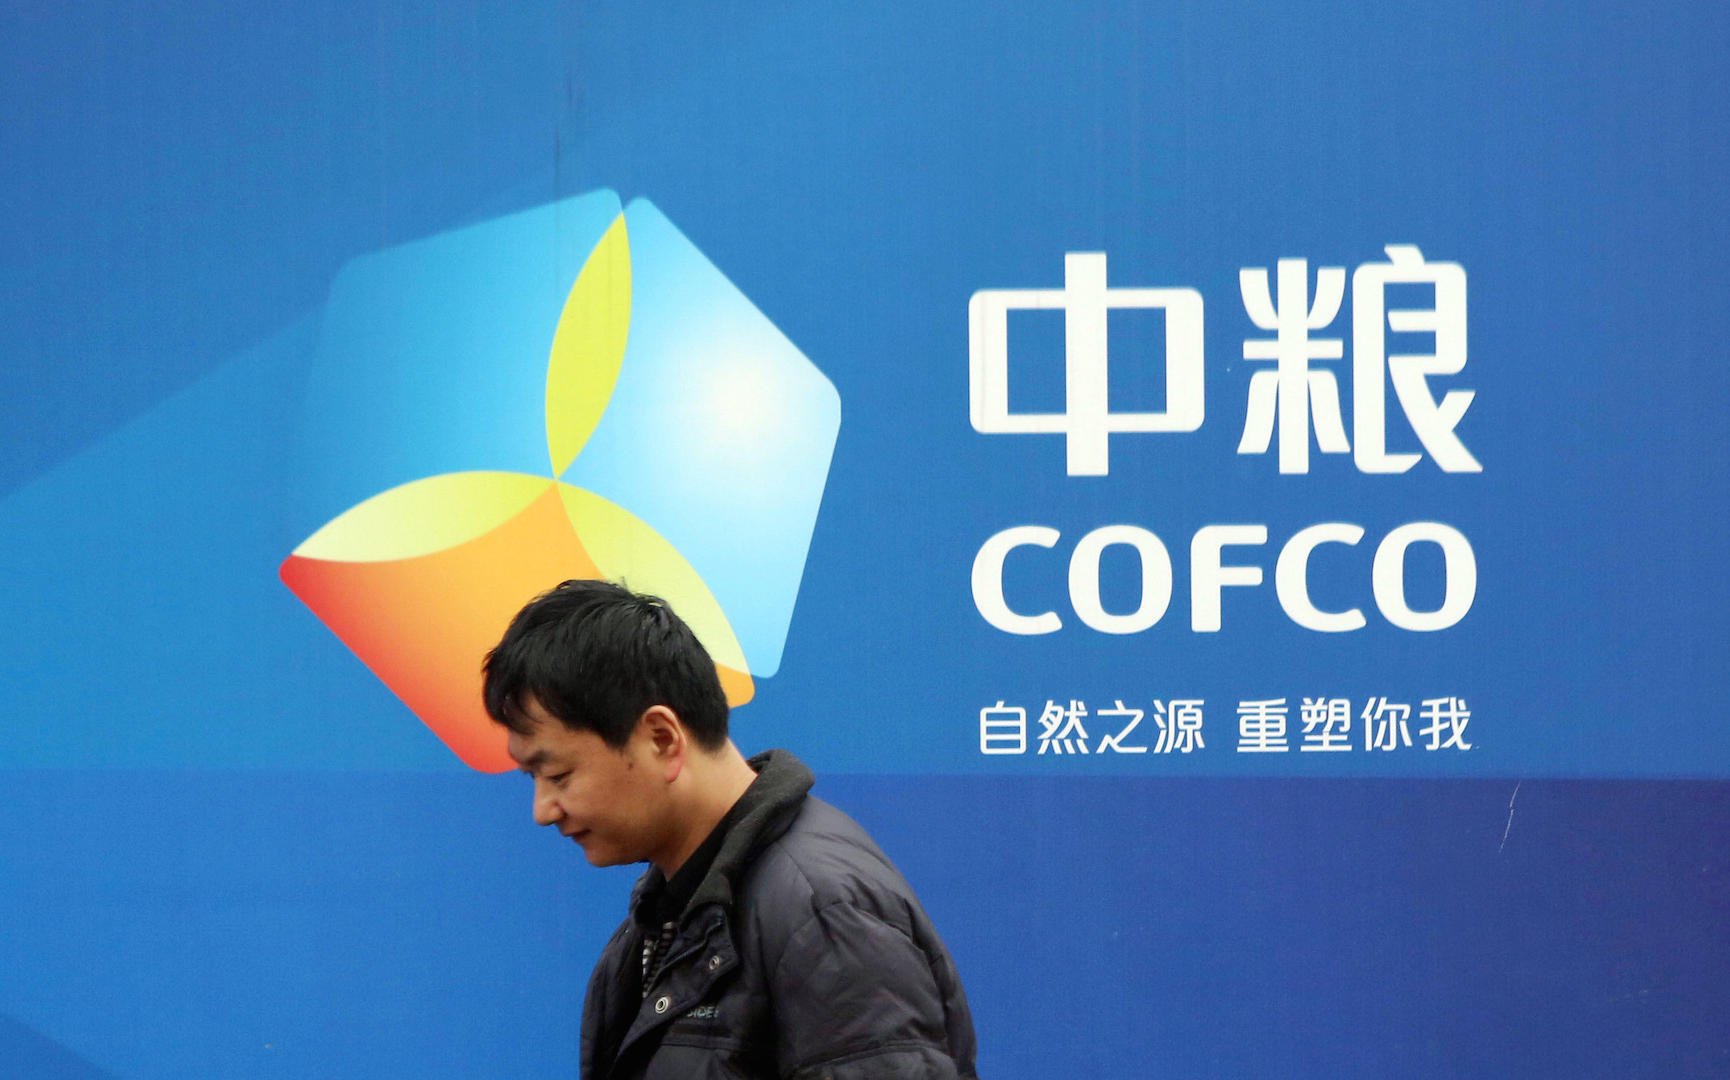 Um chinês em pé ao lado de um pôster da Cofco